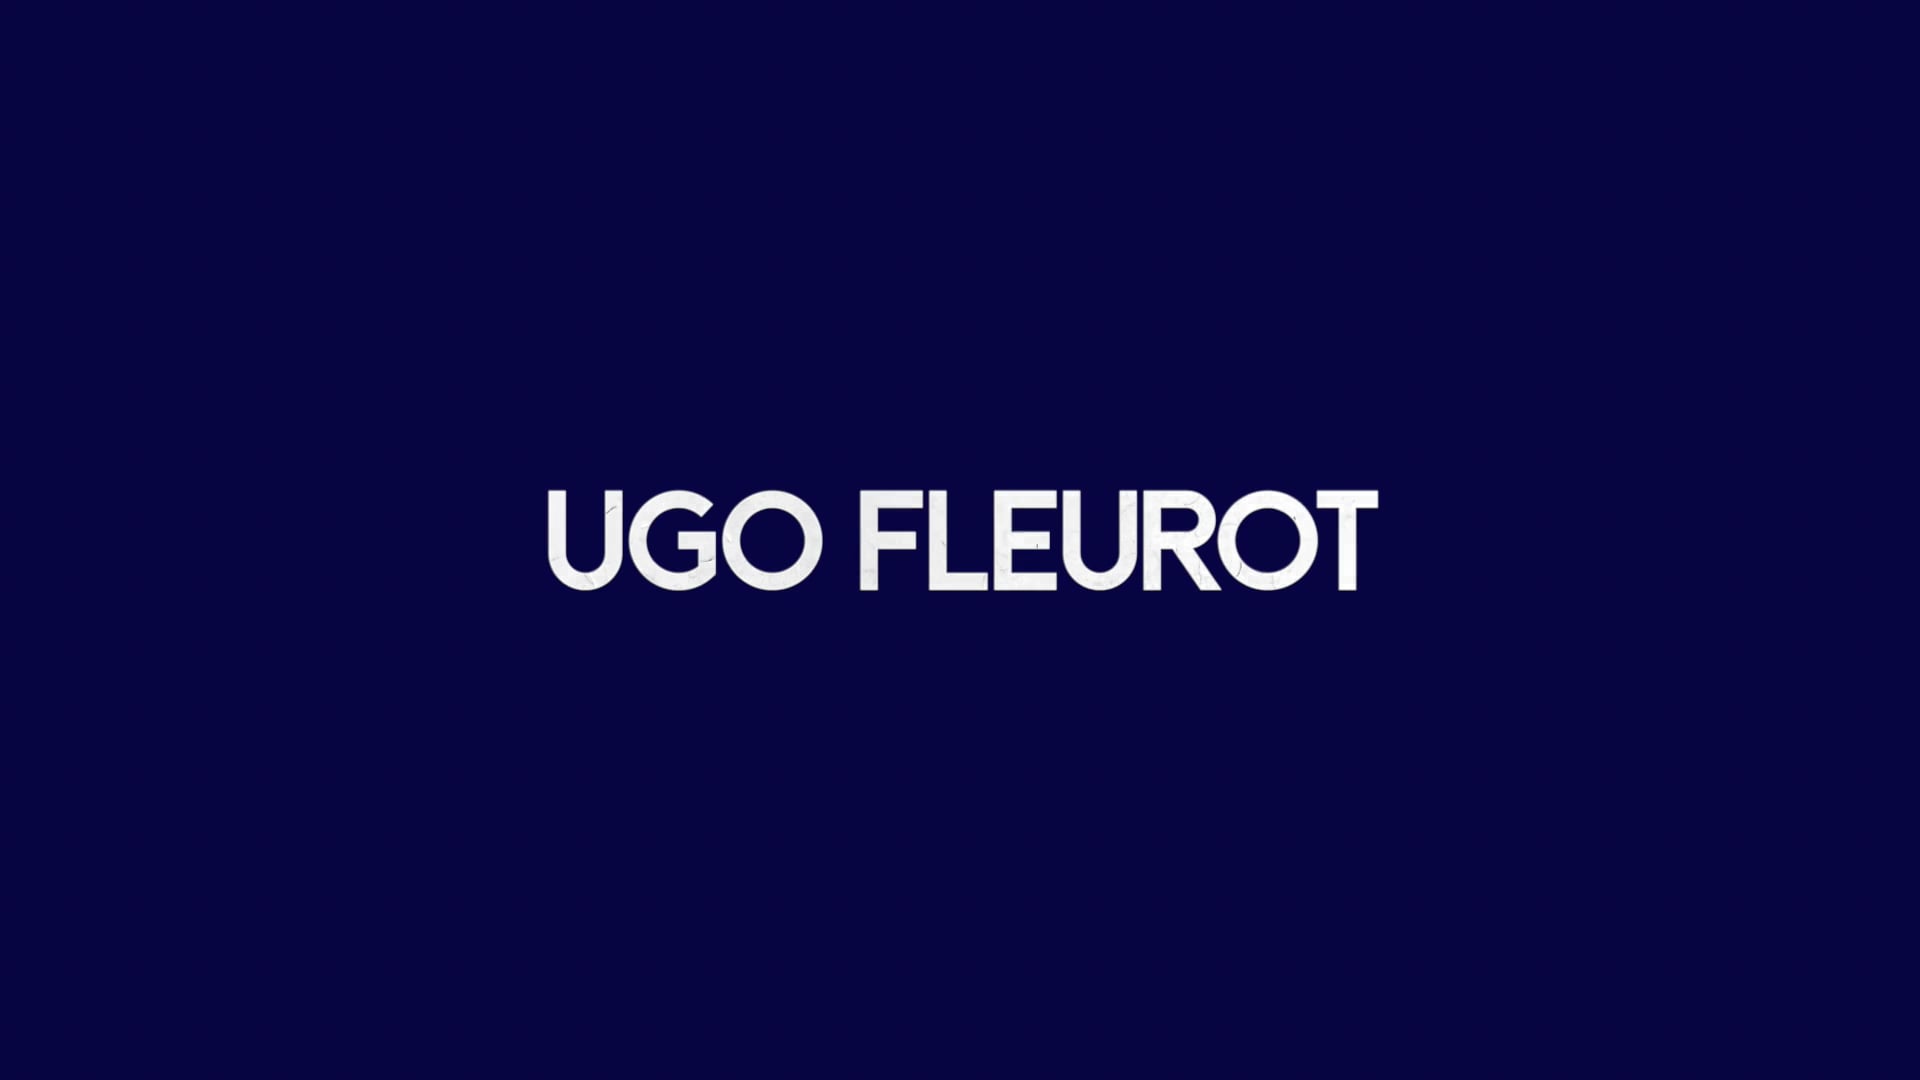 INTERVIEW UGO FLEUROT